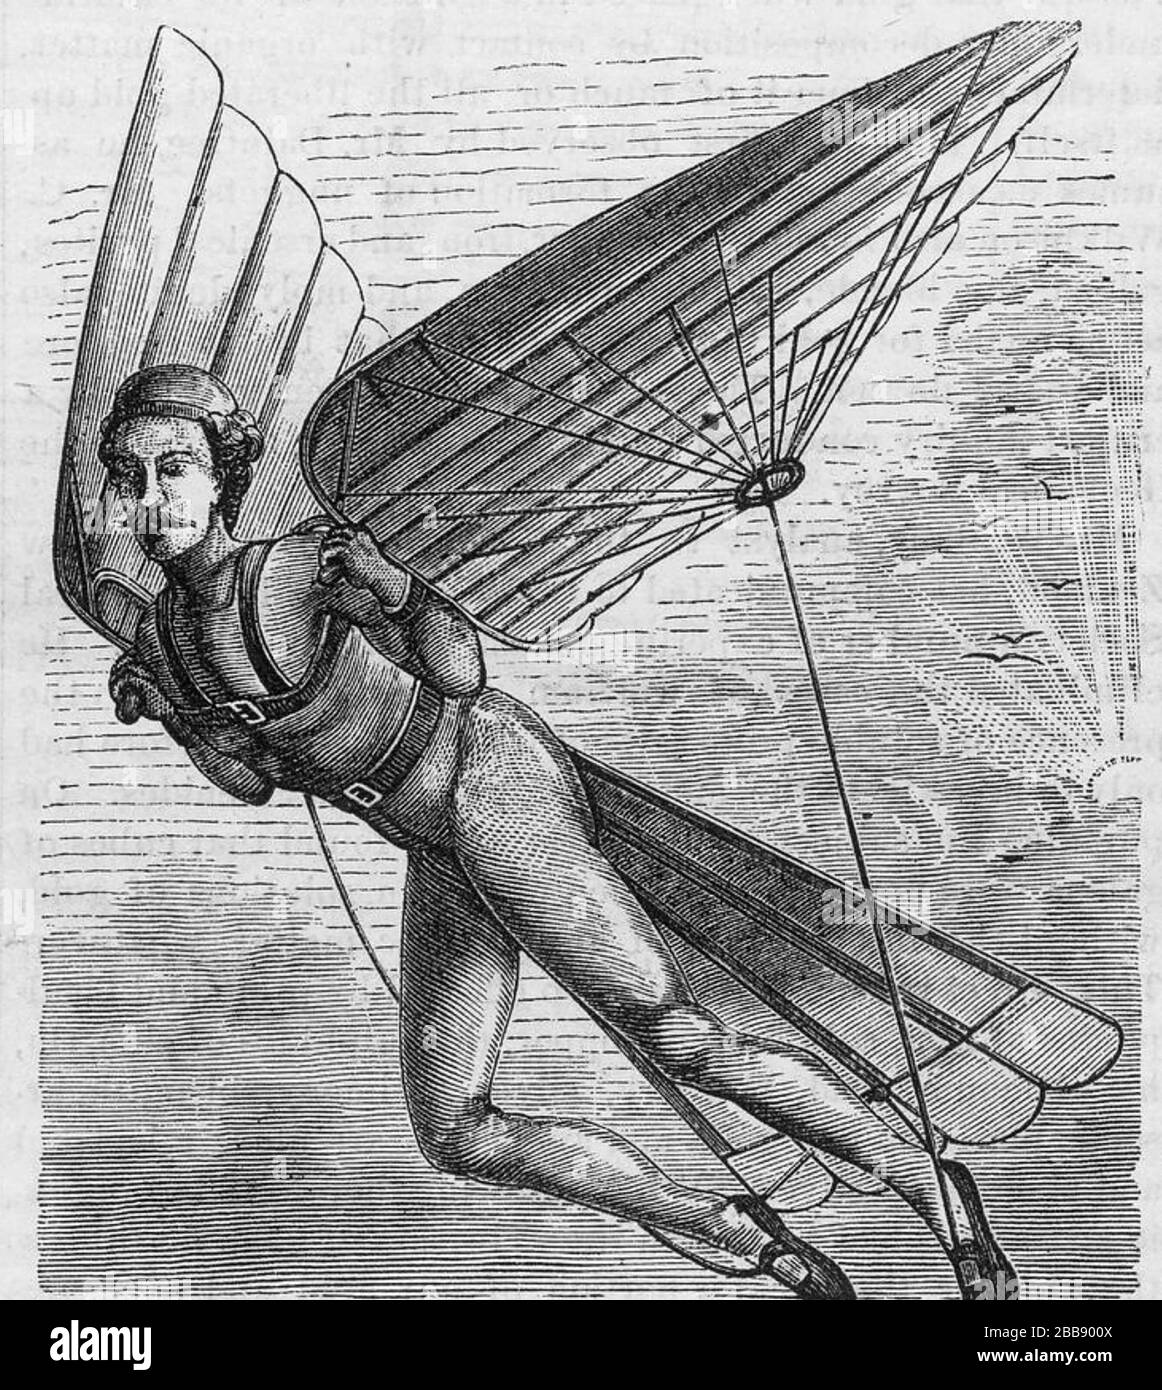 HOMME VOLANT envisagé par un M. Quimby de Wilmington, Delaware, en 1871. Rien n'est connu de M. Quimby, mais curieusement pionnier, l'aviateur américain Harriet Quimby (1875-1912) partage le même nom inhabituel. Banque D'Images